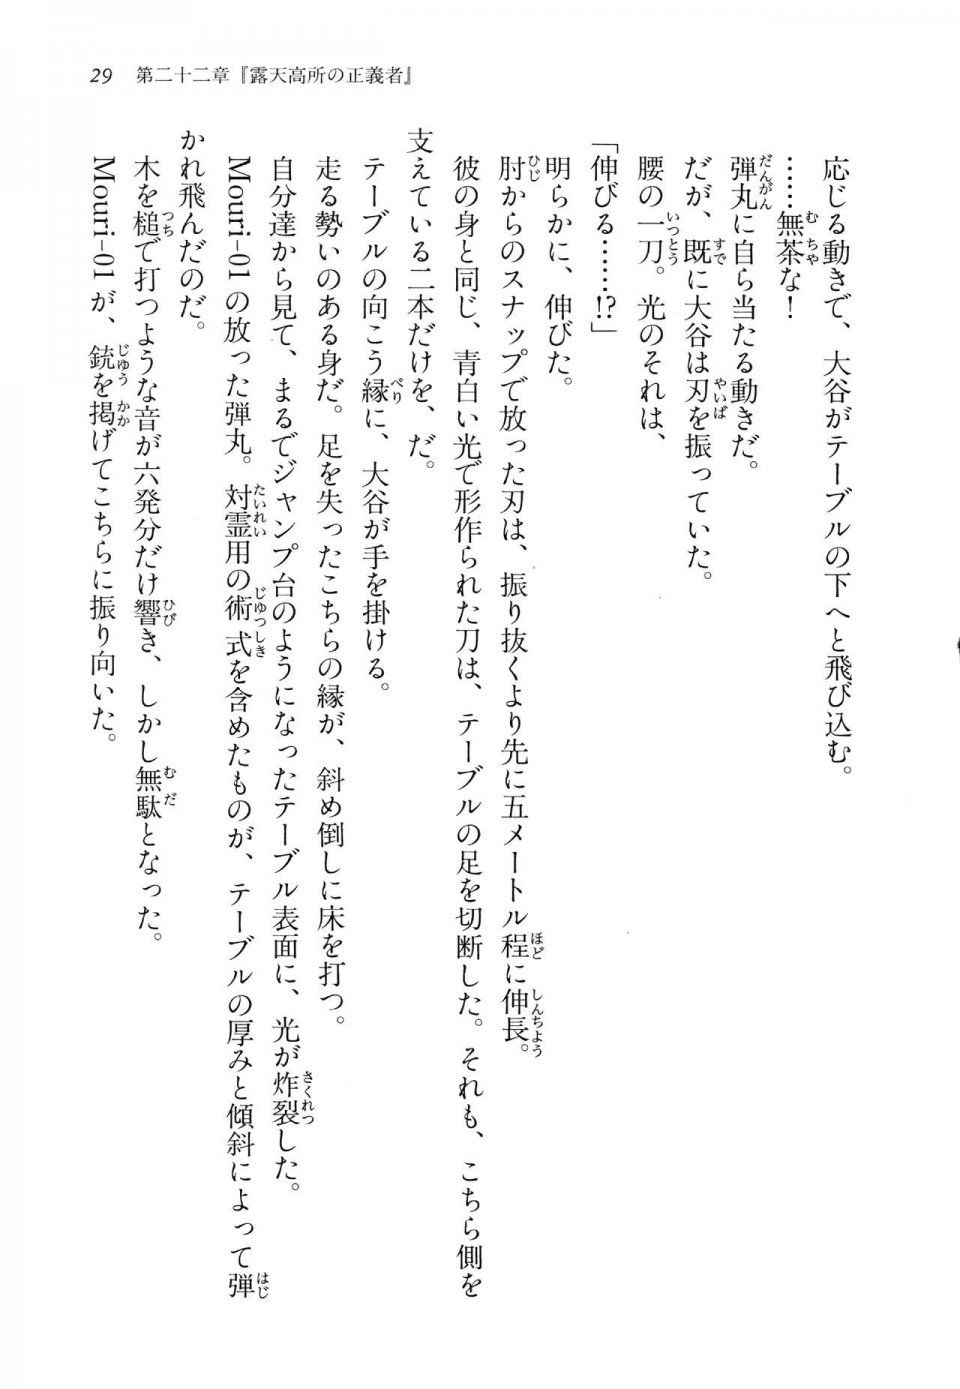 Kyoukai Senjou no Horizon LN Vol 14(6B) - Photo #29